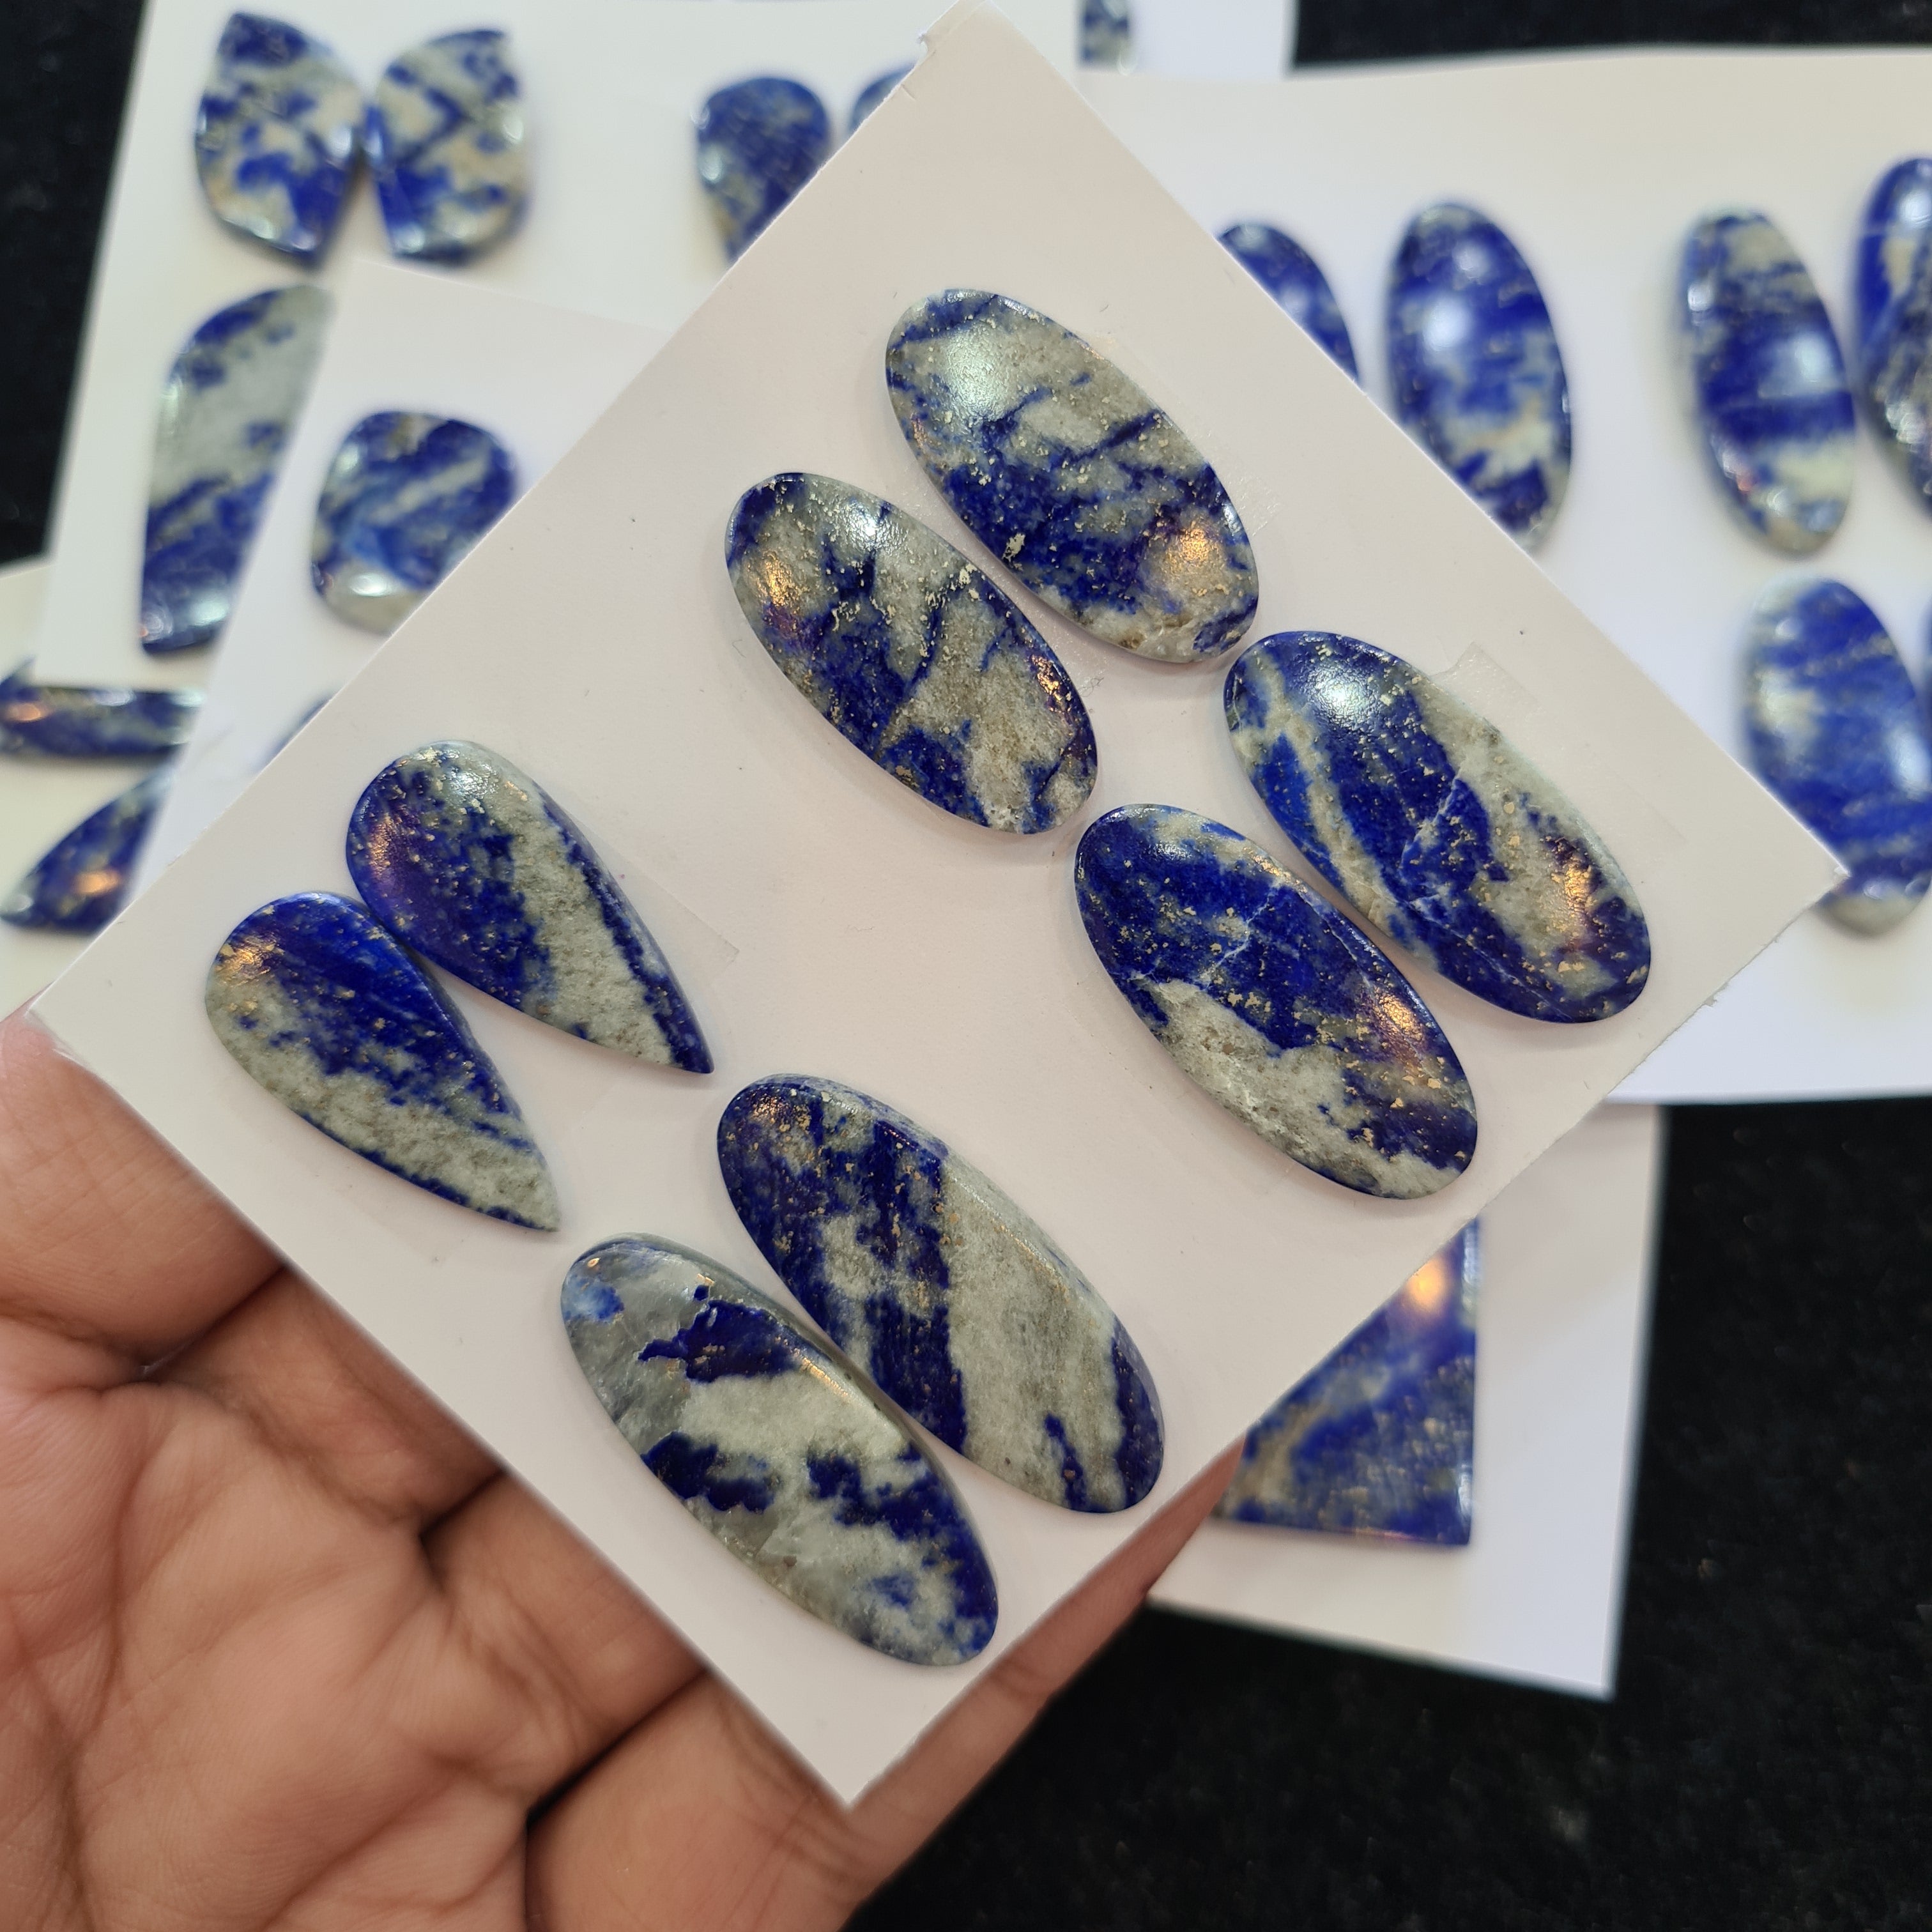 1 Set Natural Lapis Lazuli Cabs Pairs Mix Shape Size: 19-32mm - The LabradoriteKing